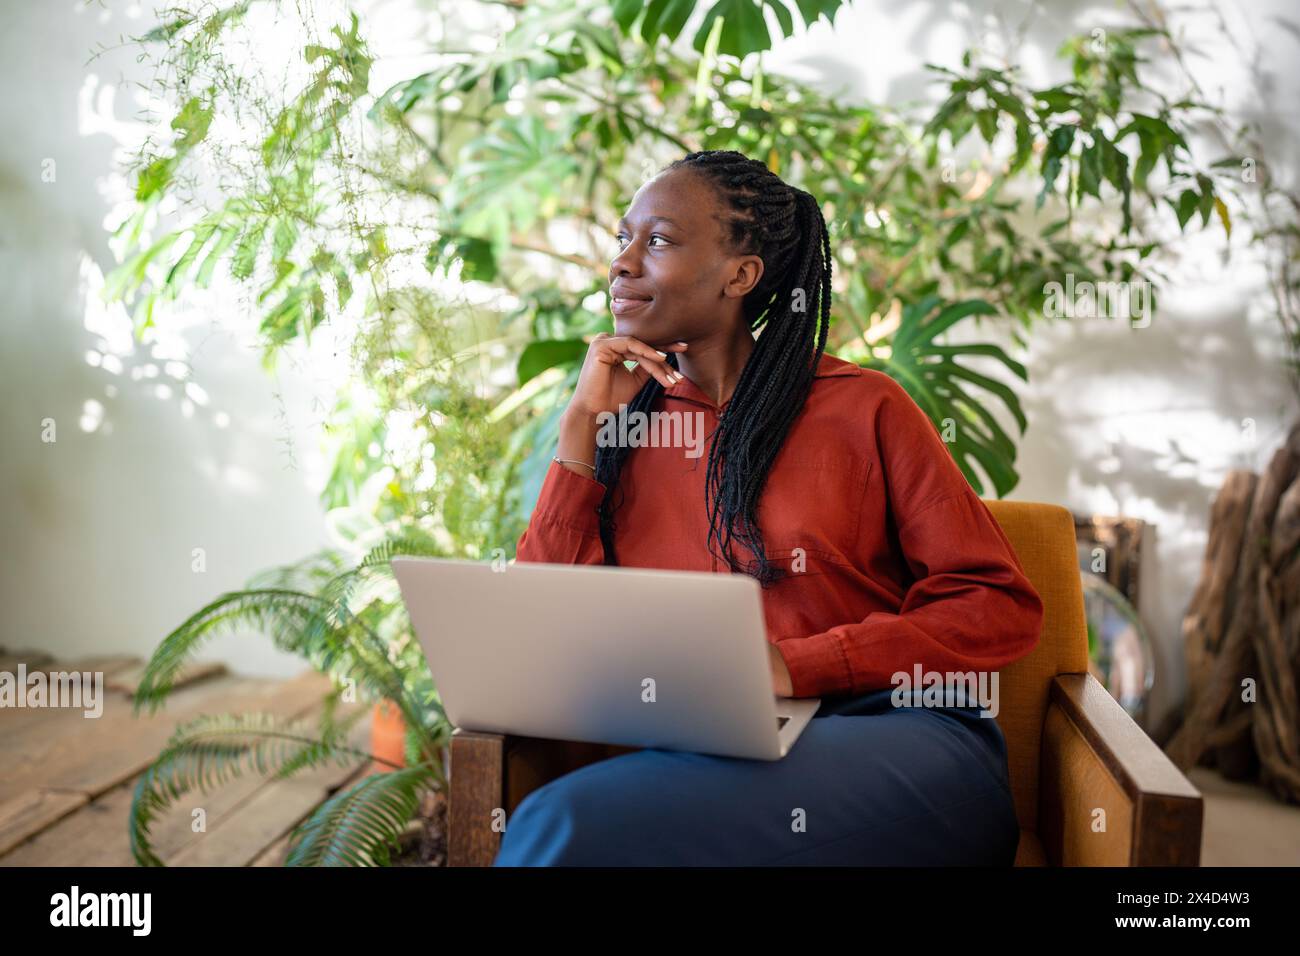 Una donna nera premurosa e rilassata si prende una pausa dal lavoro con un laptop, guarda da parte la finestra e la verde casa. Foto Stock